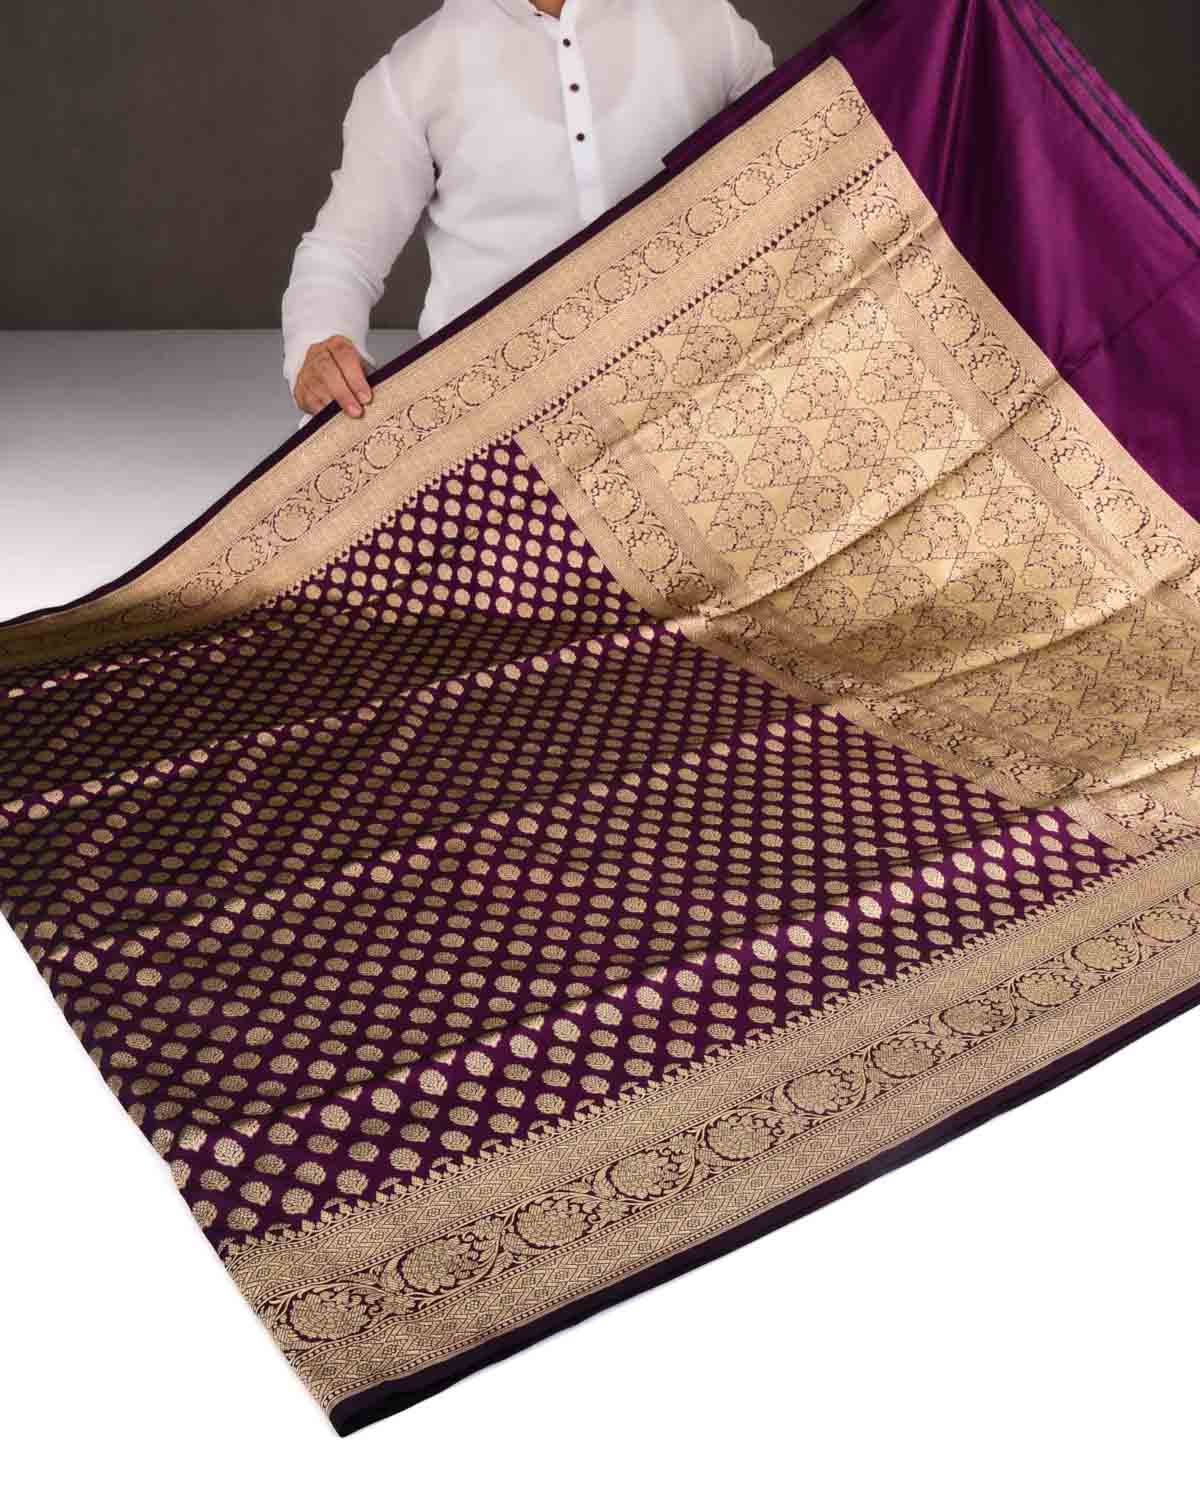 Purple Banarasi Gold Zari Buti Cutwork Brocade Handwoven Katan Silk Saree-HolyWeaves